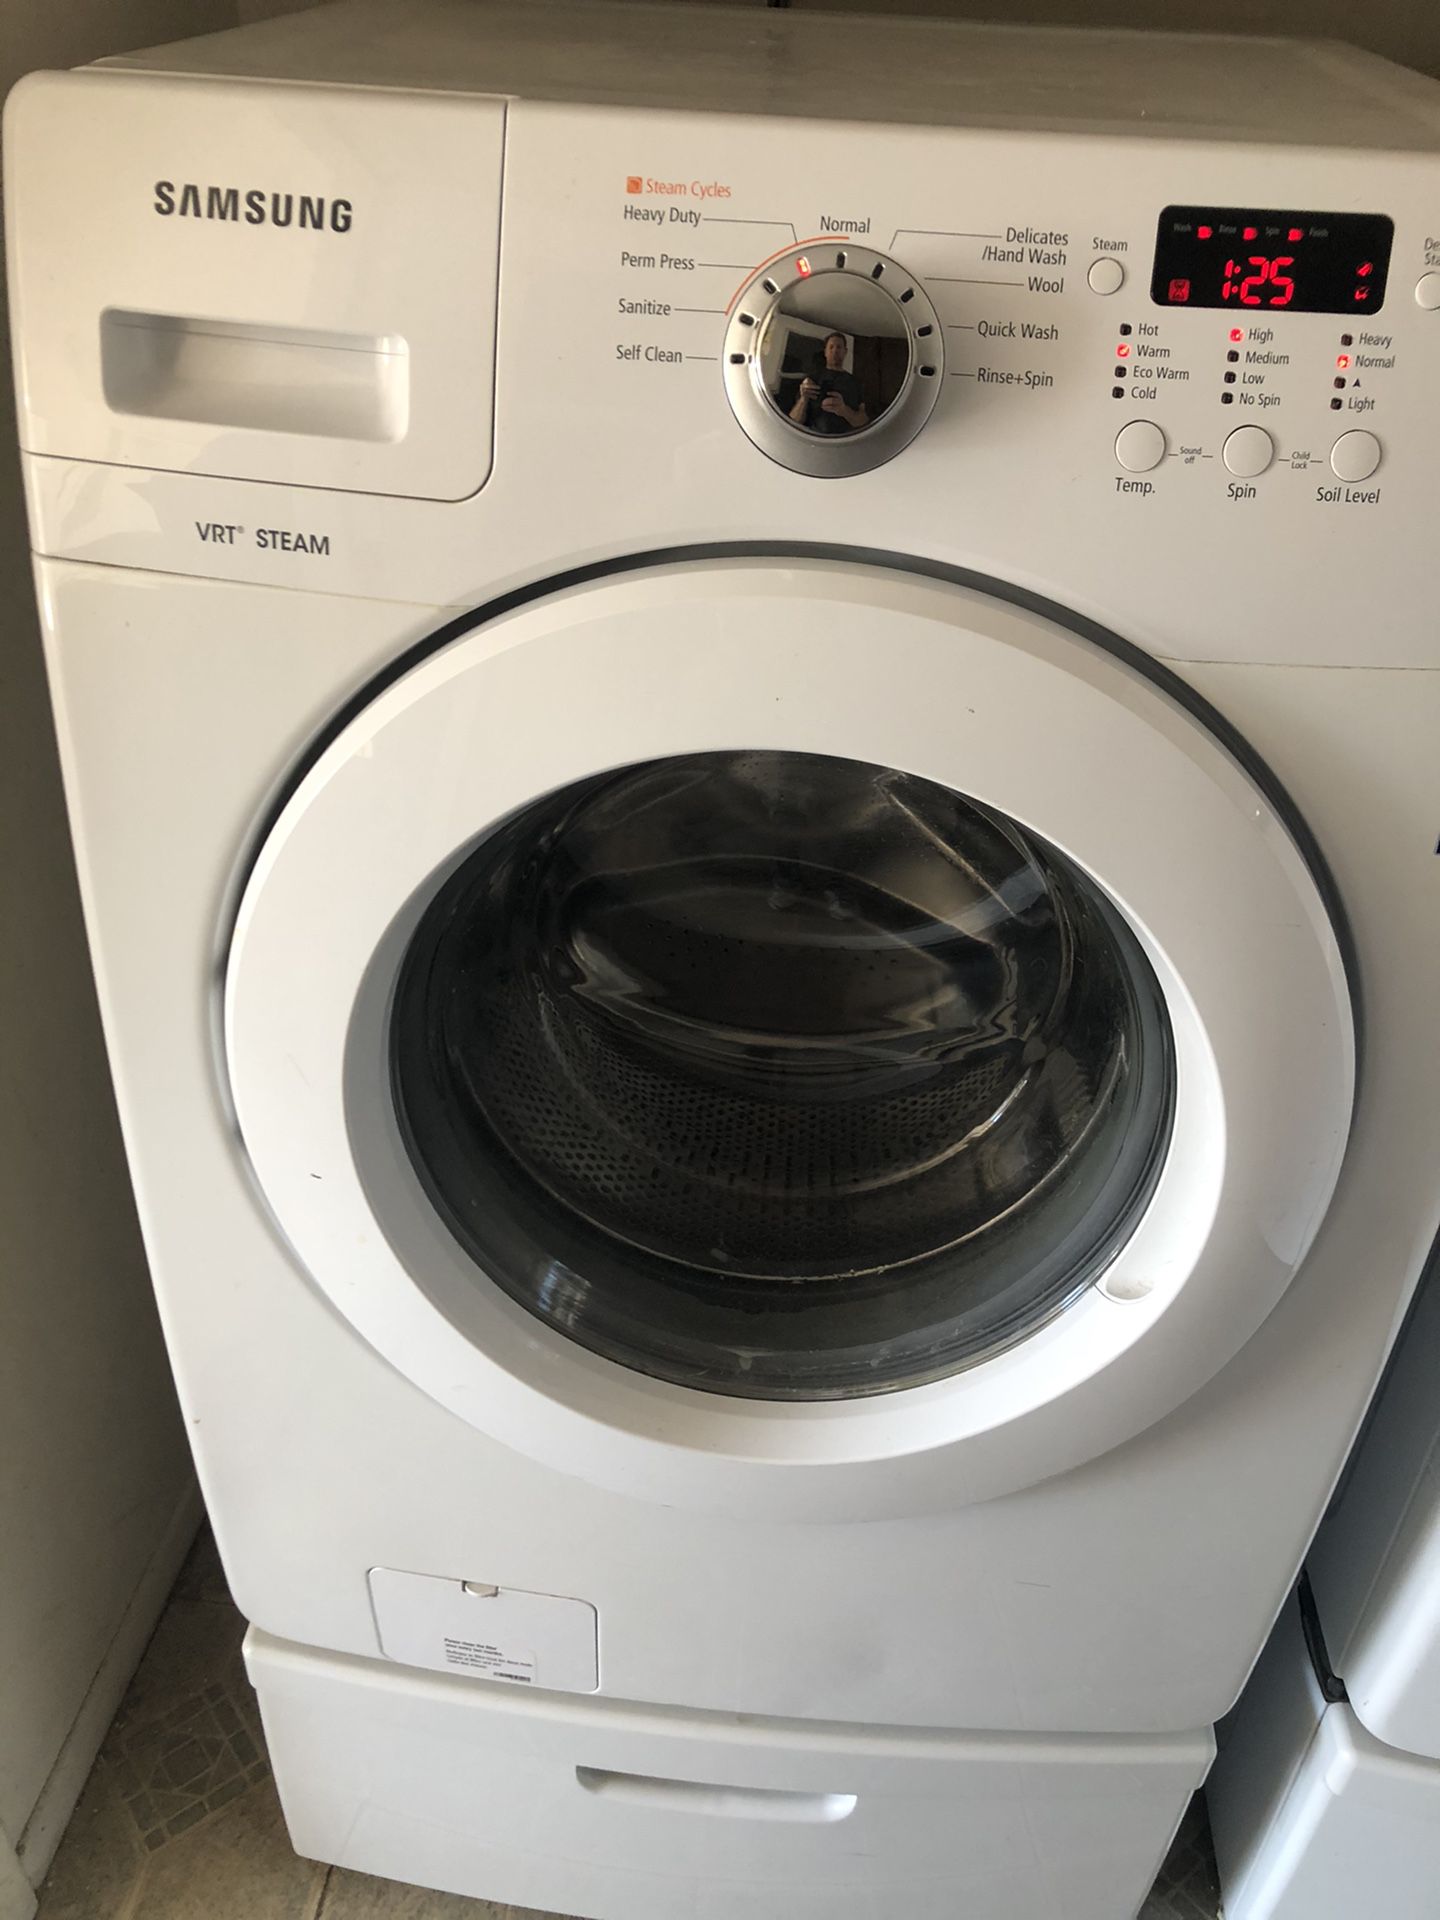 Samsung washer dryer set with warranty and pedestals